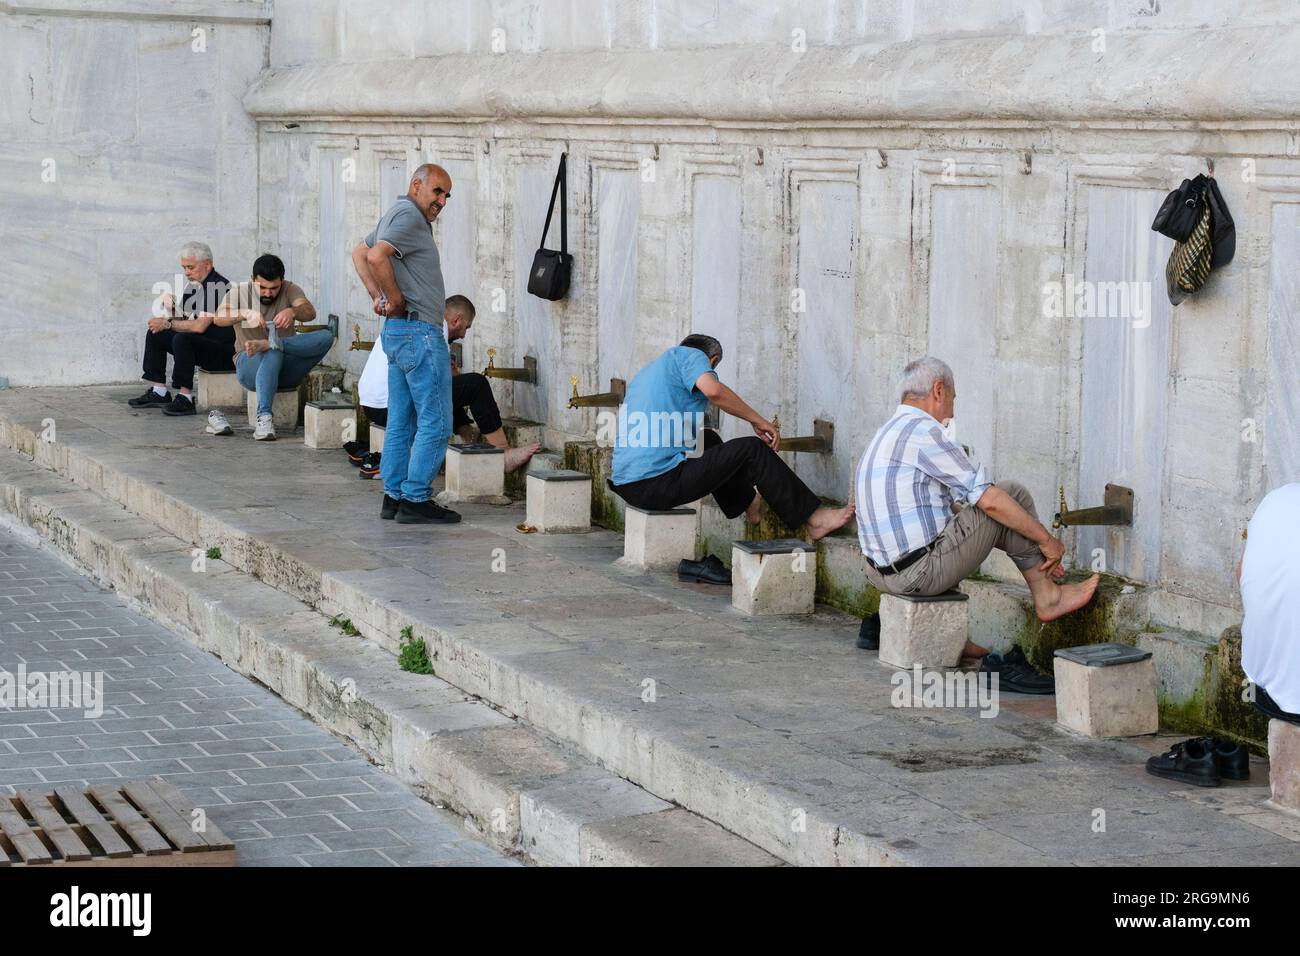 Istanbul, Türkei, Türkiye. Männer, die in der Neuen Moschee (Yeni Camii) vor dem Gebet Abwässer vorführen Stockfoto